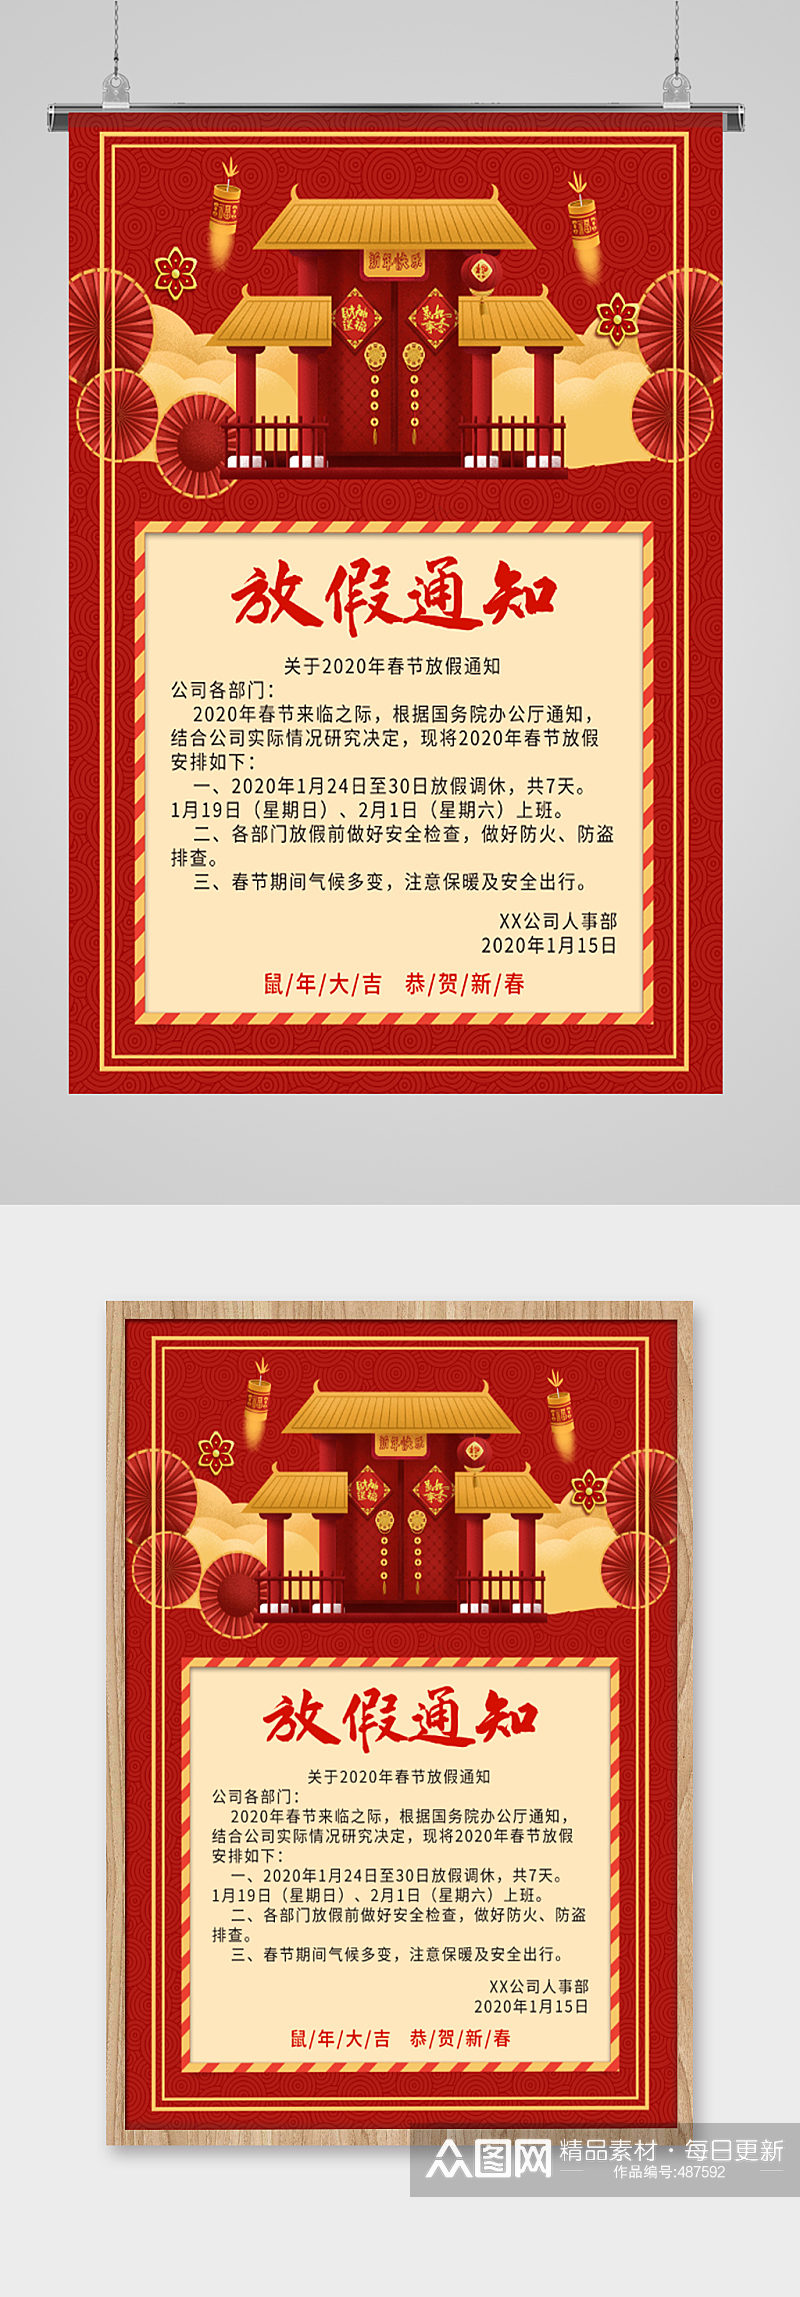 中式传统春节放假通知海报素材